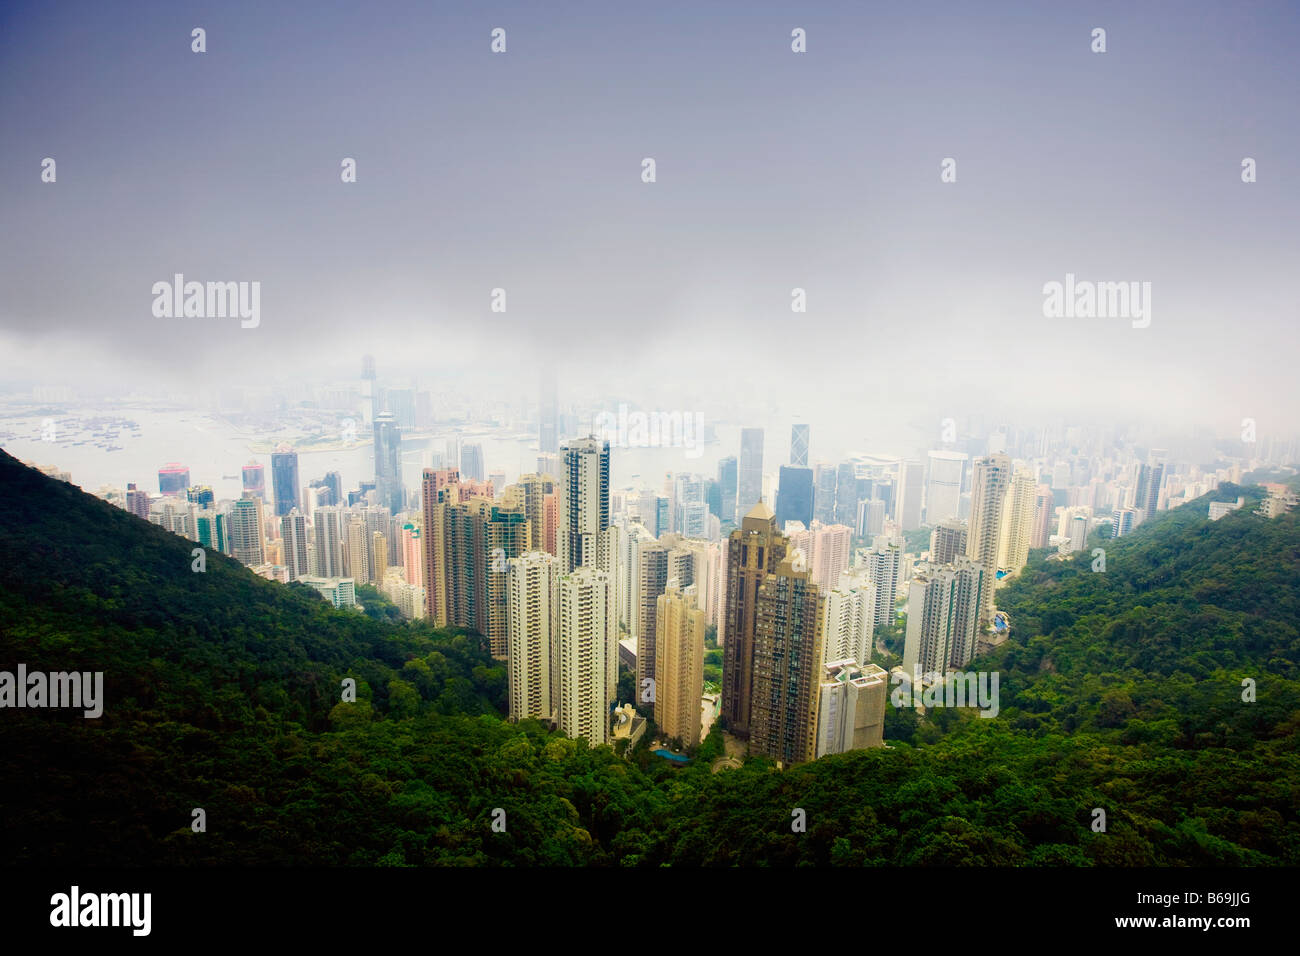 Aerial view of skyscrapers in a city, Hong Kong Island, Hong Kong, China Stock Photo